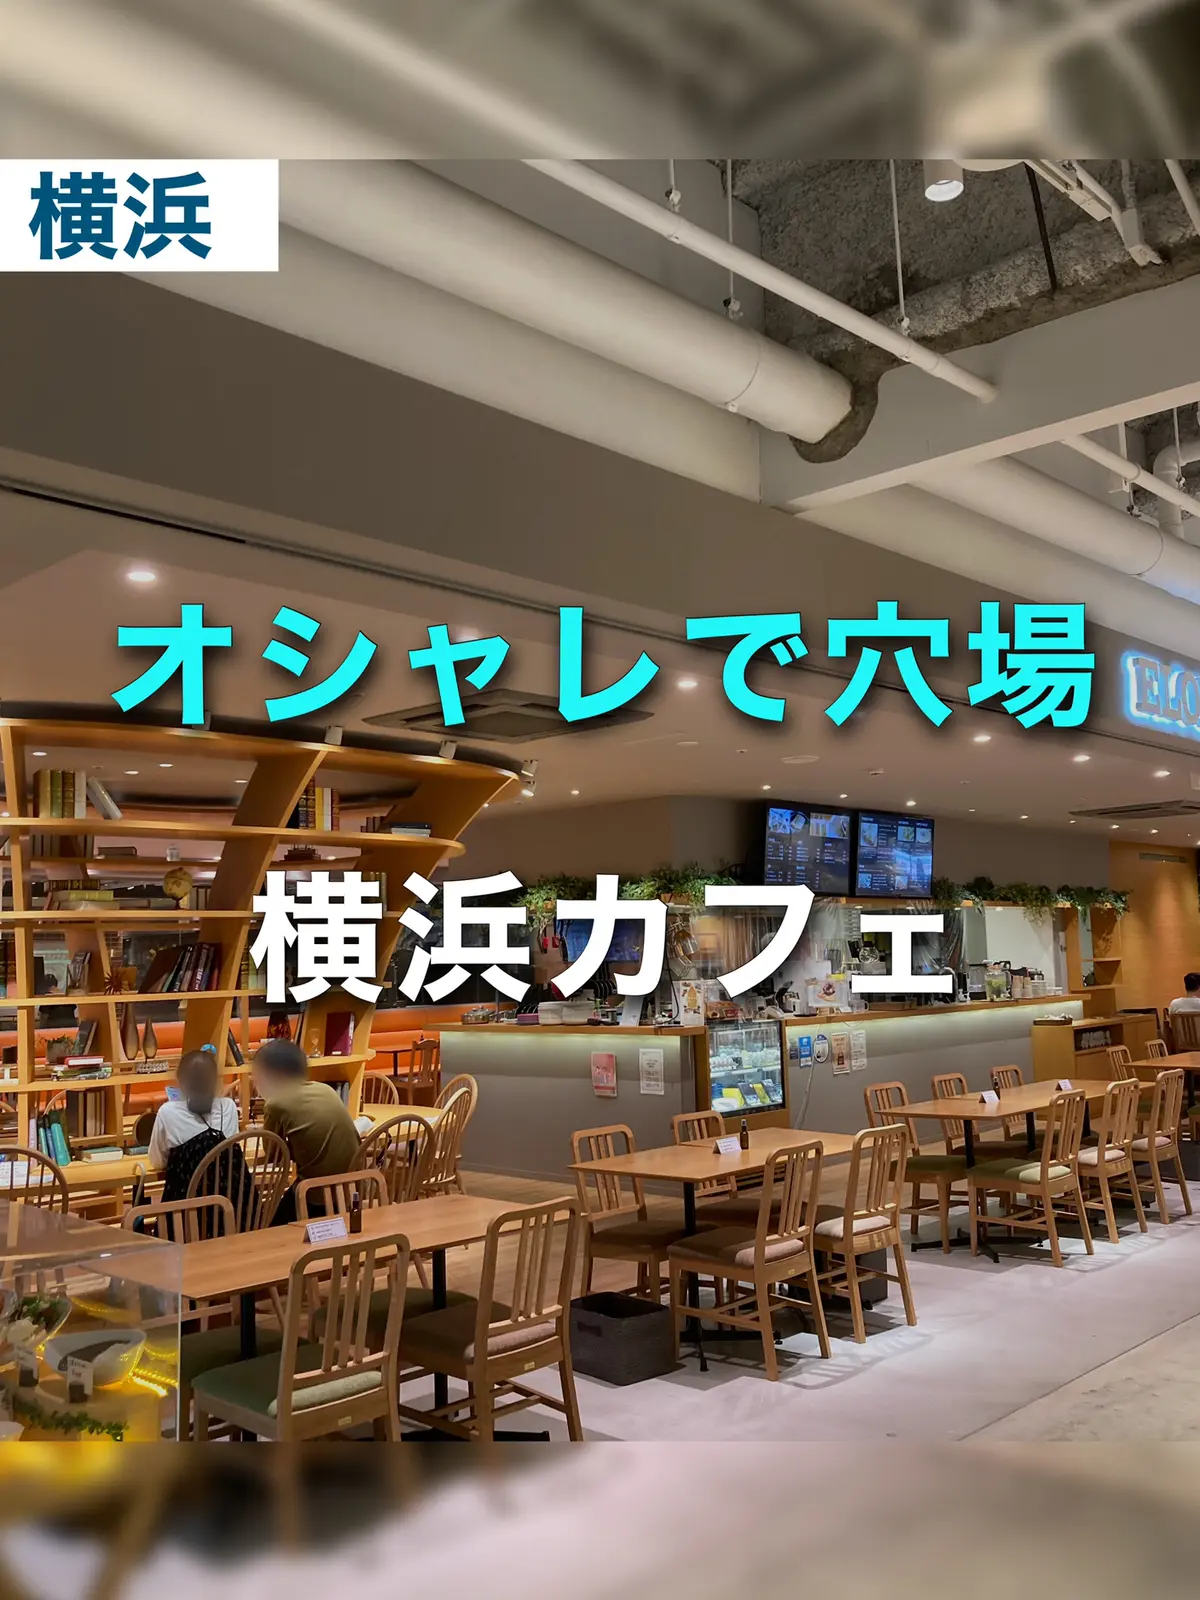 穴場カフェ Eloise S Cafe 横浜ハンマーヘッド店 ゆき カフェ巡り 東京 神奈川が投稿したフォトブック Lemon8